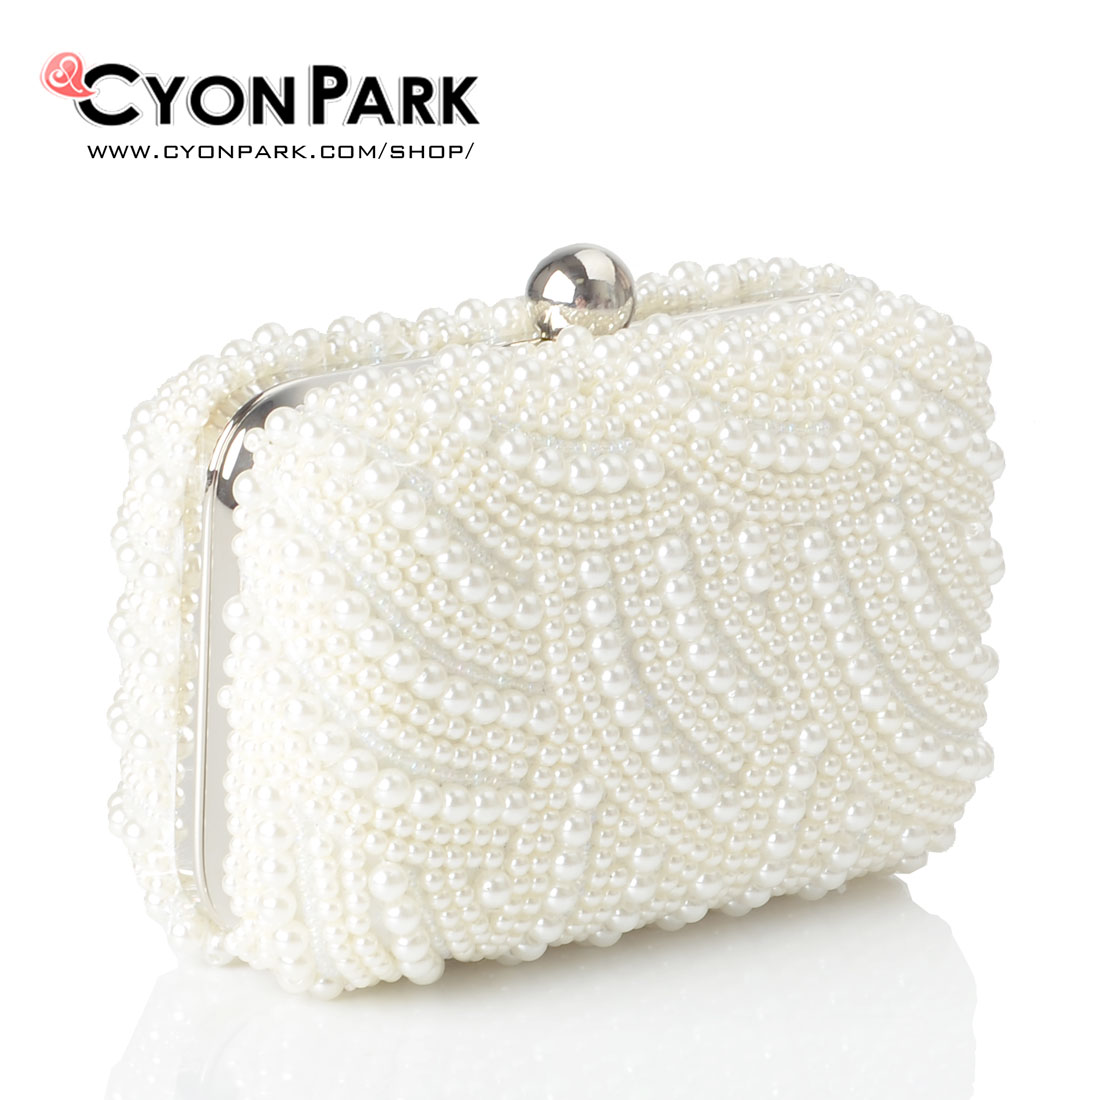 Clutch Pesta CyonPark – Butik Online shop tas pesta belt wanita Cyonpark